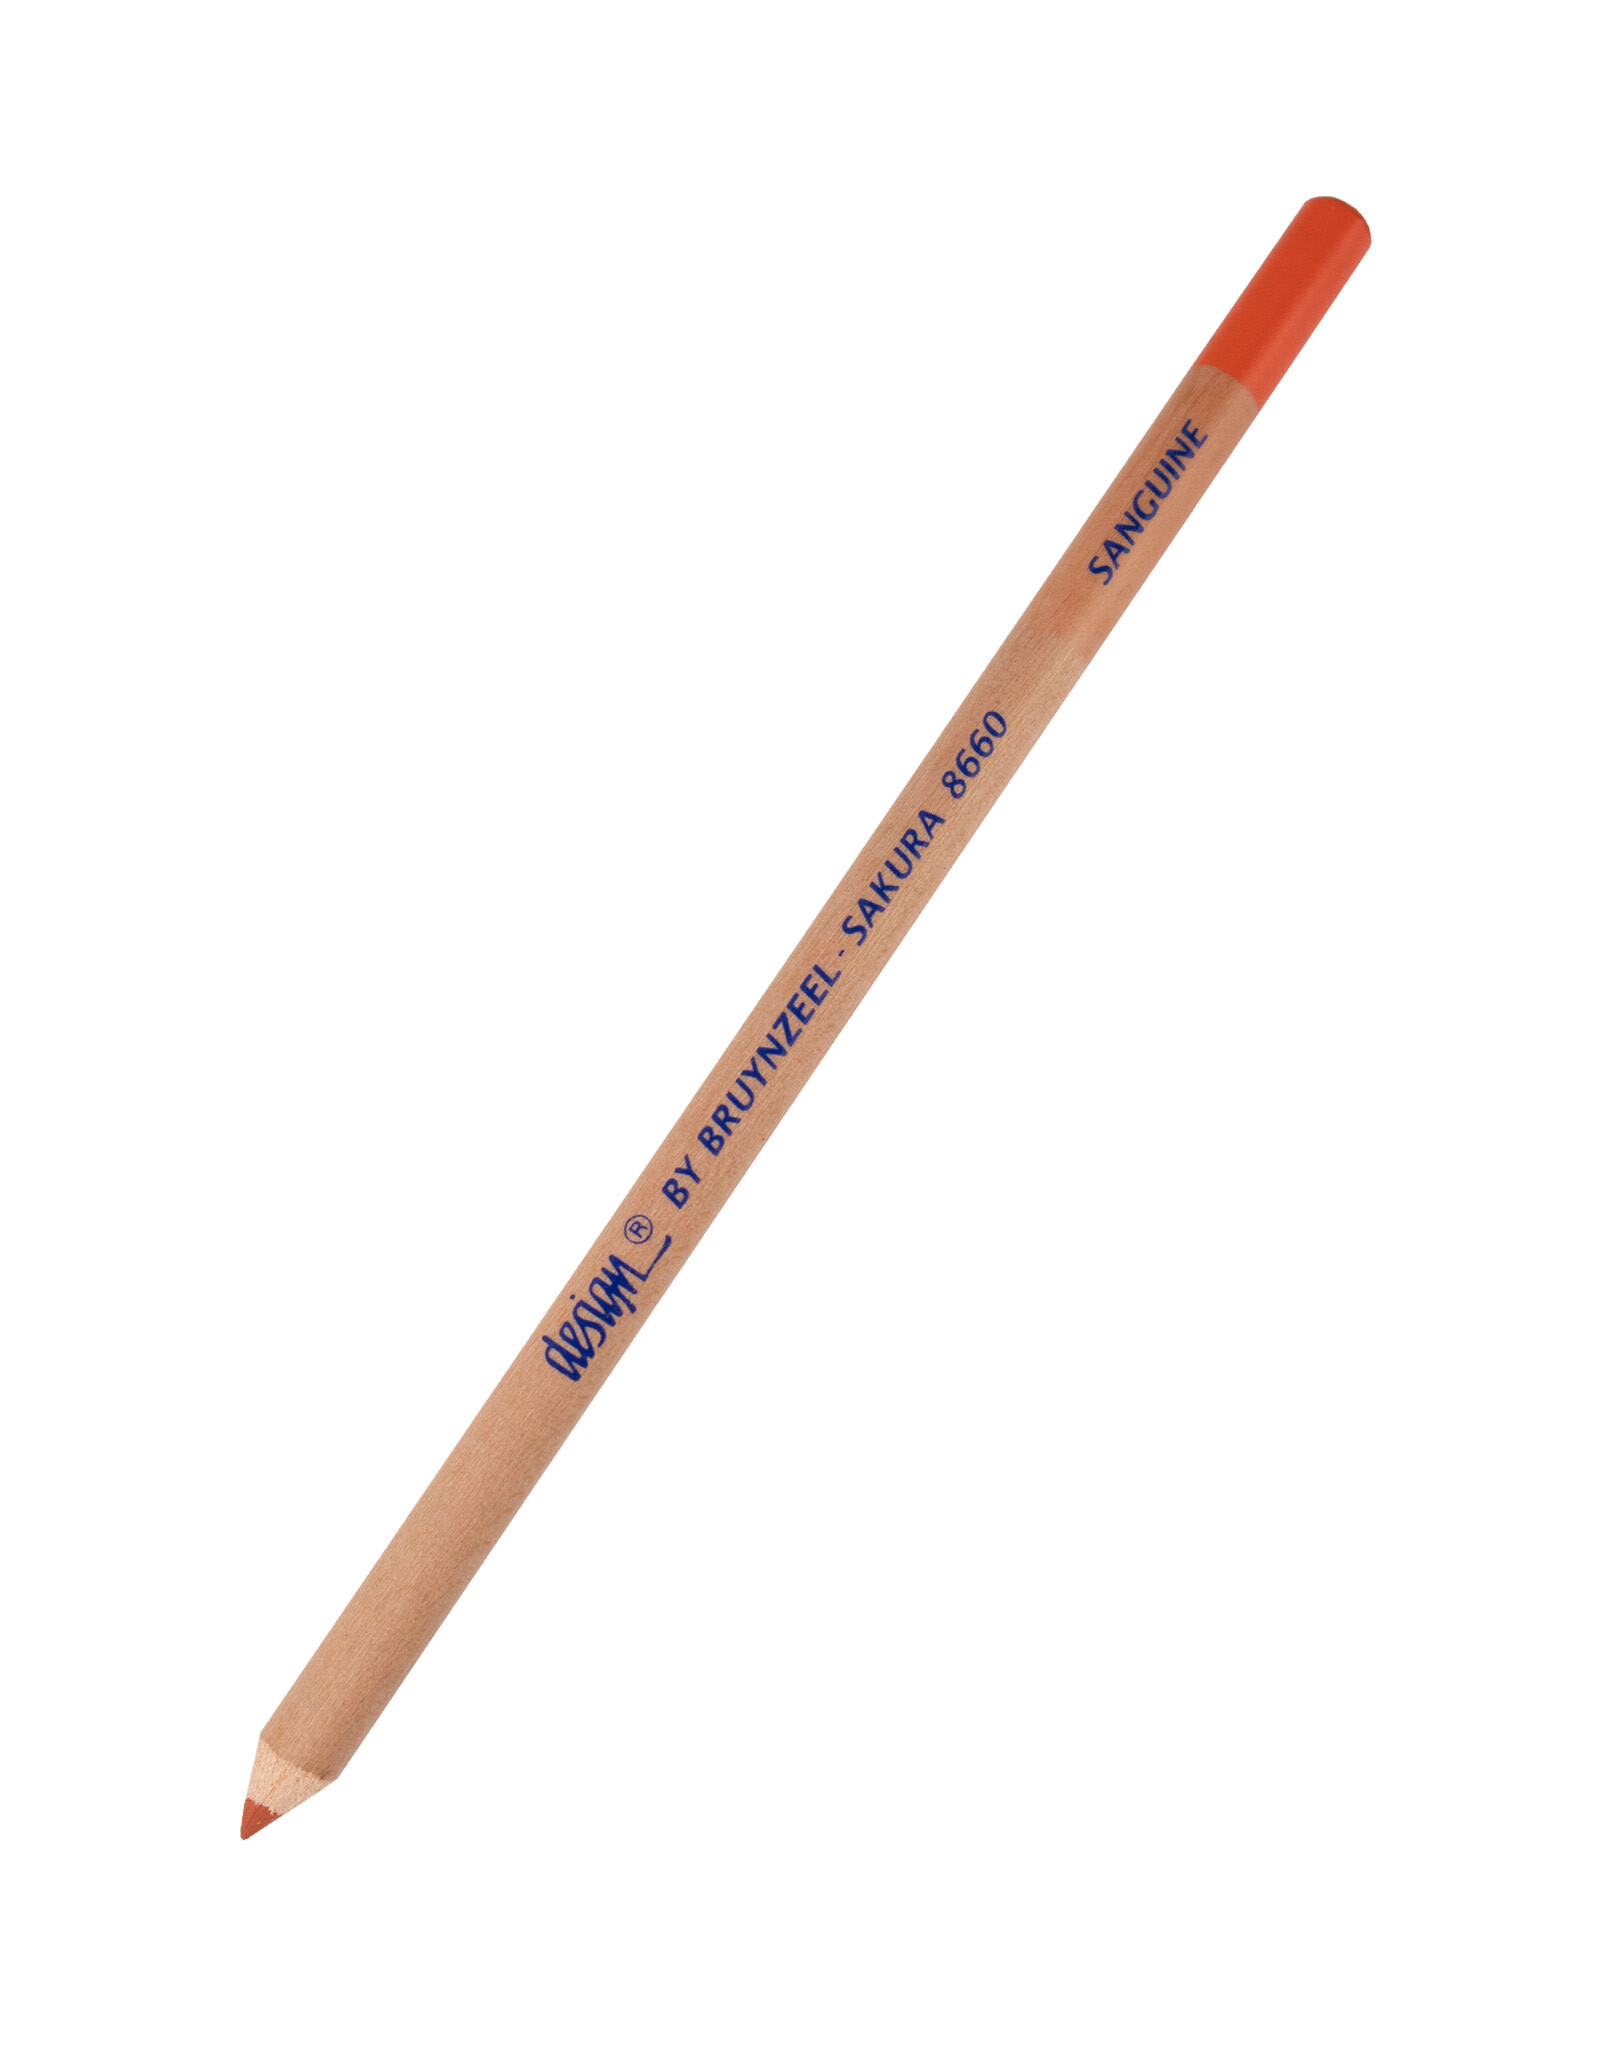 Royal Talens Bruynzeel Design Chalk Pencil, Sanguine